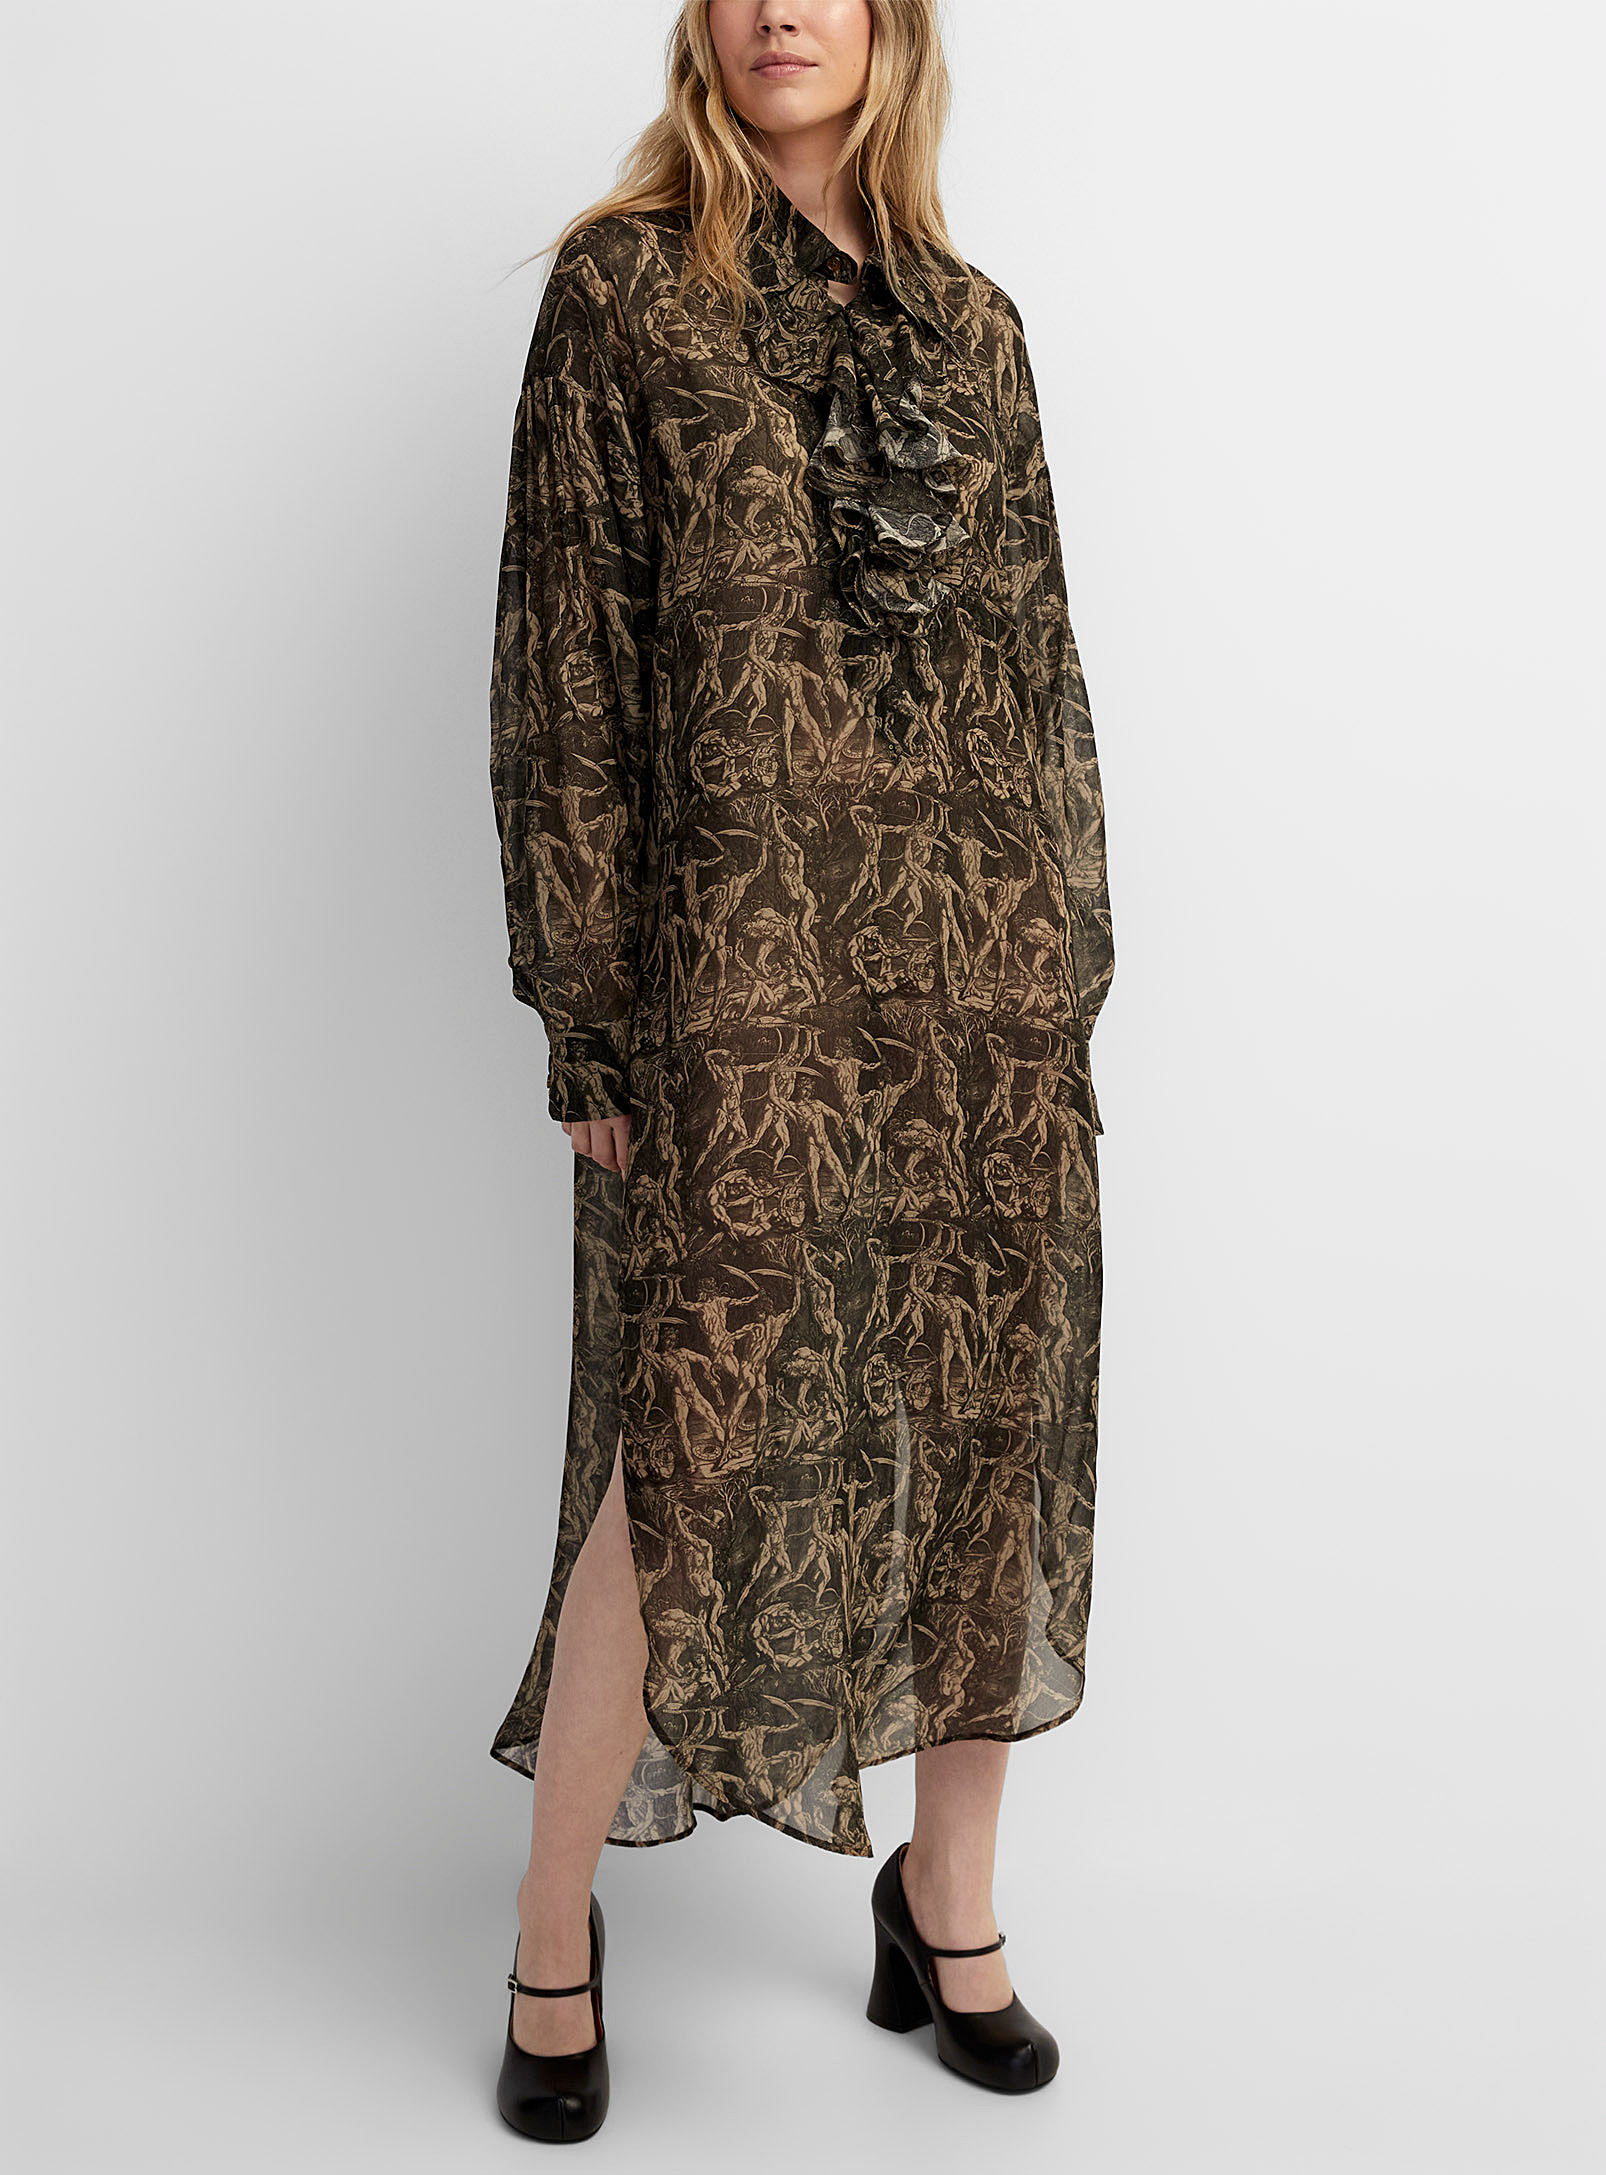 Vivienne Westwood - Women's Battle of Men ruffled maxi dress